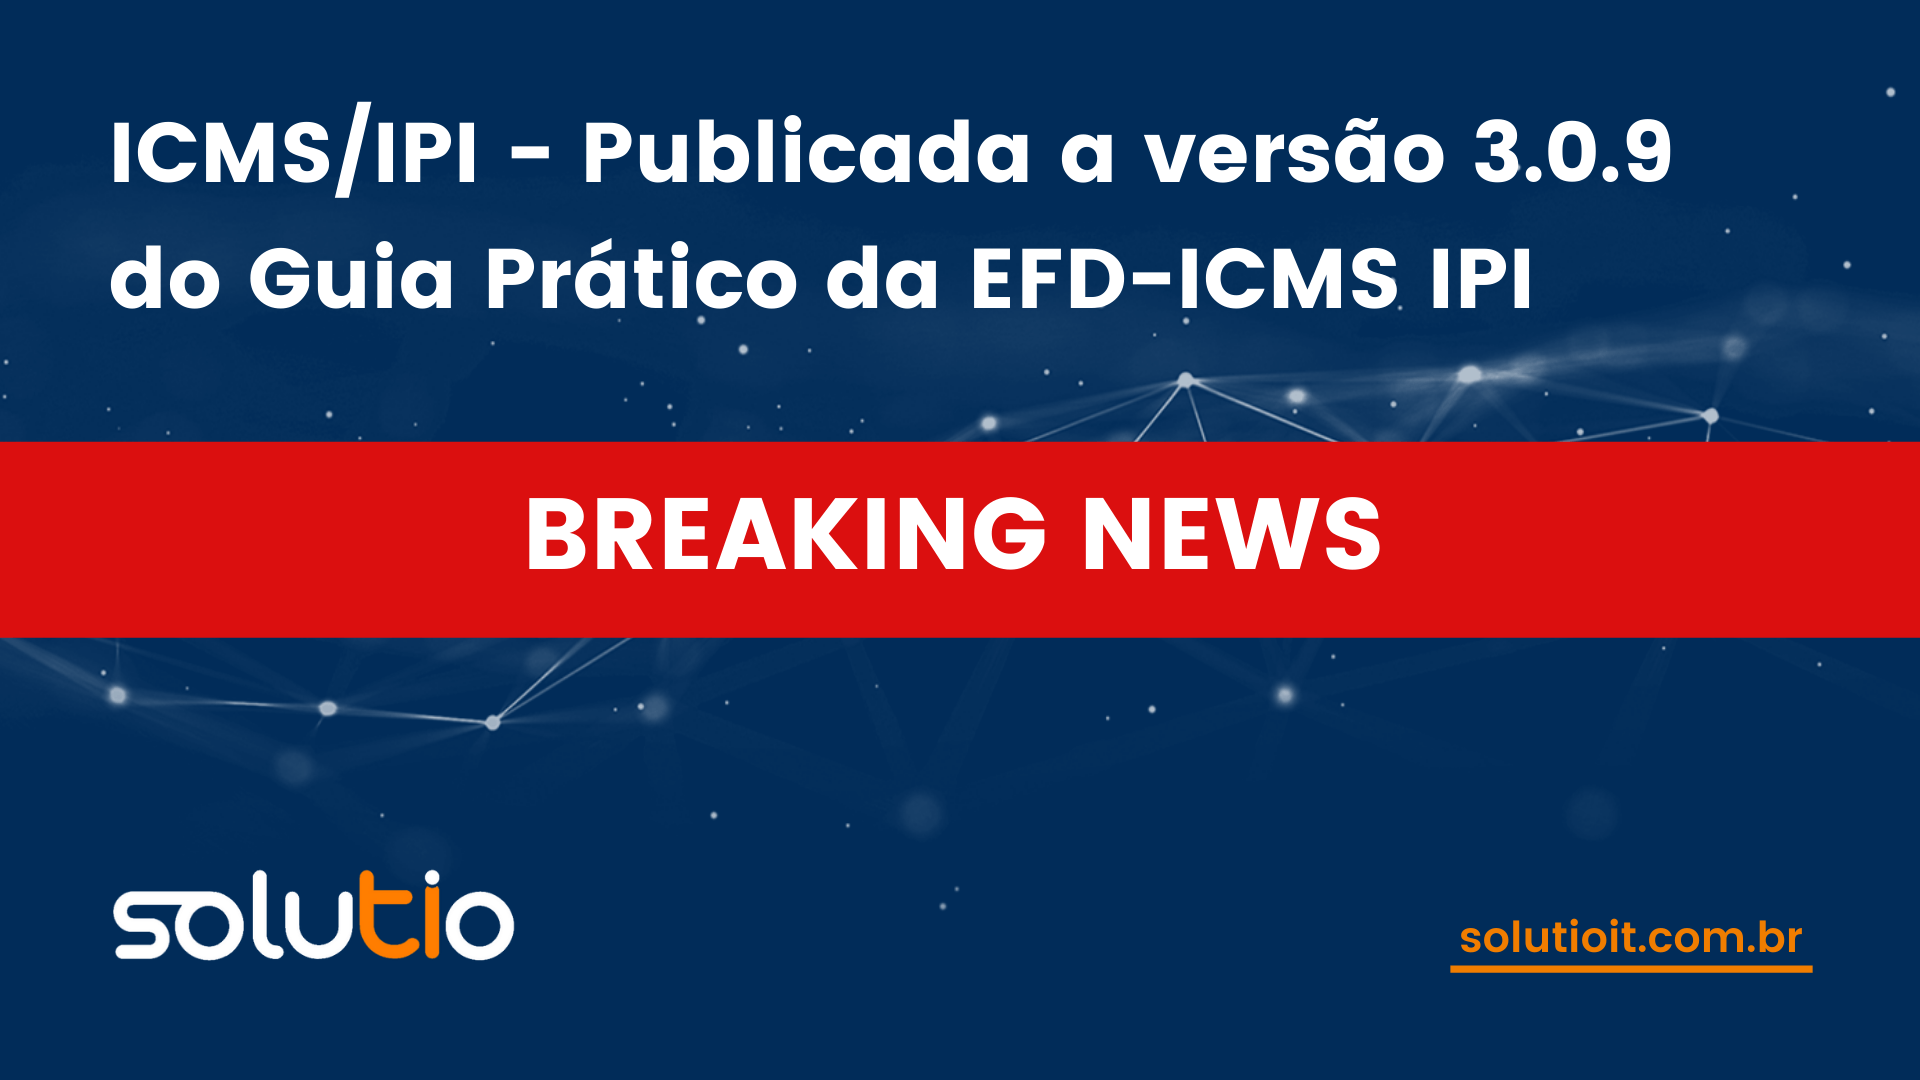 ICMS/IPI - Publicada a versão 3.0.9 do Guia Prático da EFD-ICMS IPI